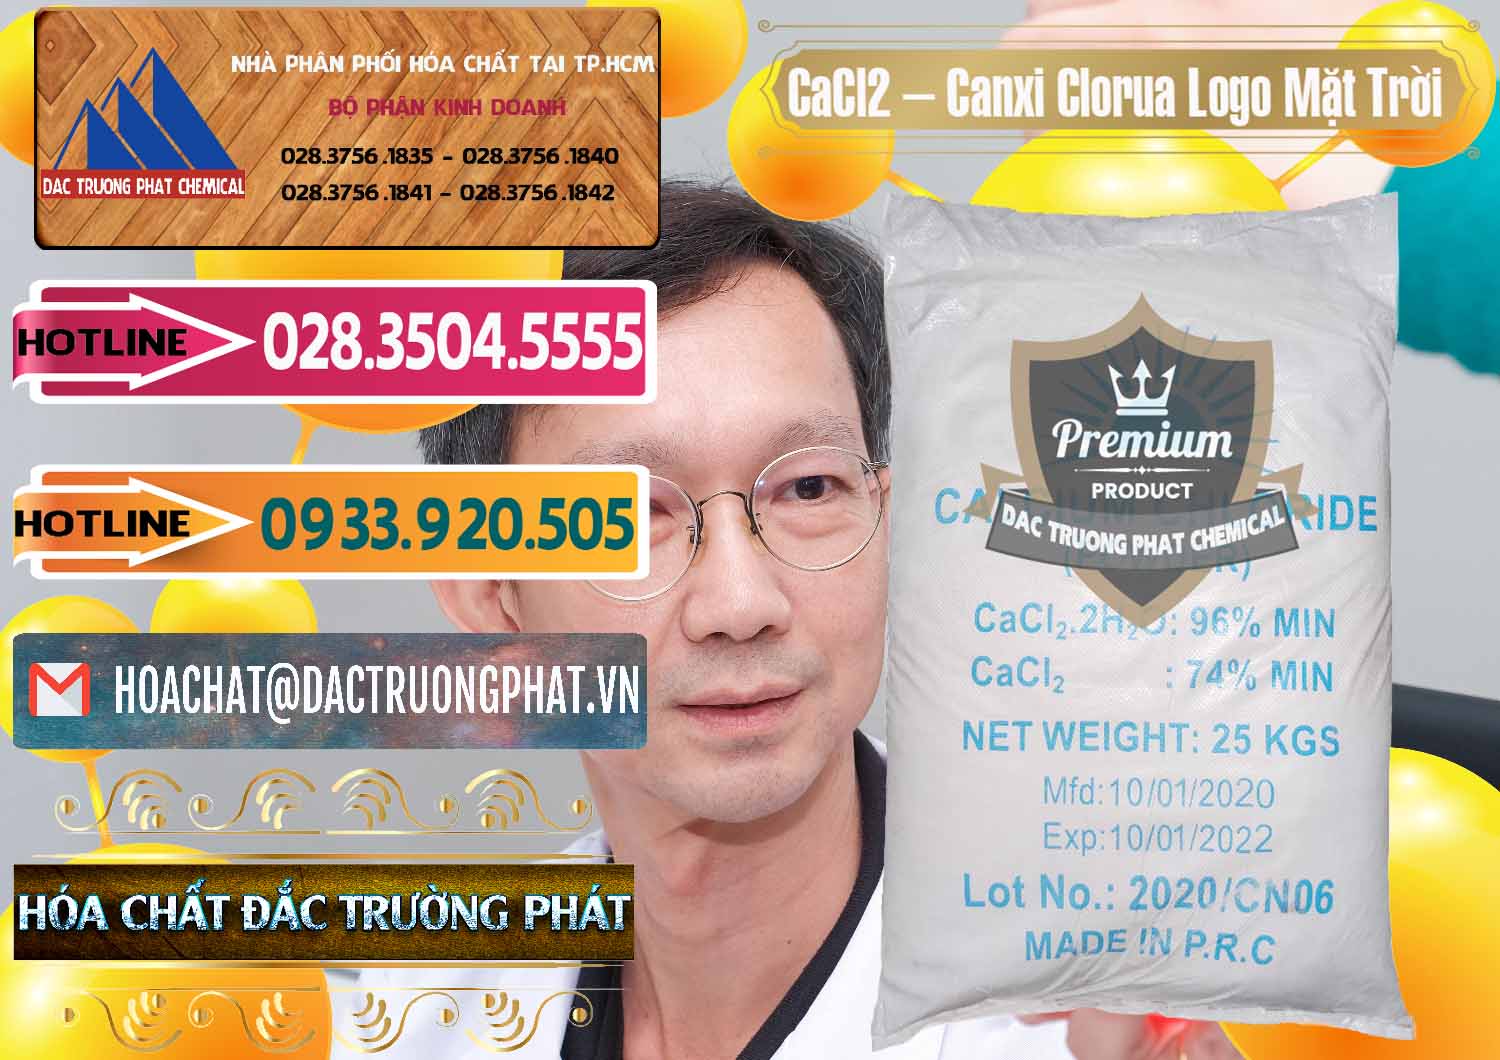 Cty chuyên nhập khẩu & bán CaCl2 – Canxi Clorua 96% Logo Mặt Trời Trung Quốc China - 0041 - Kinh doanh _ cung cấp hóa chất tại TP.HCM - dactruongphat.vn